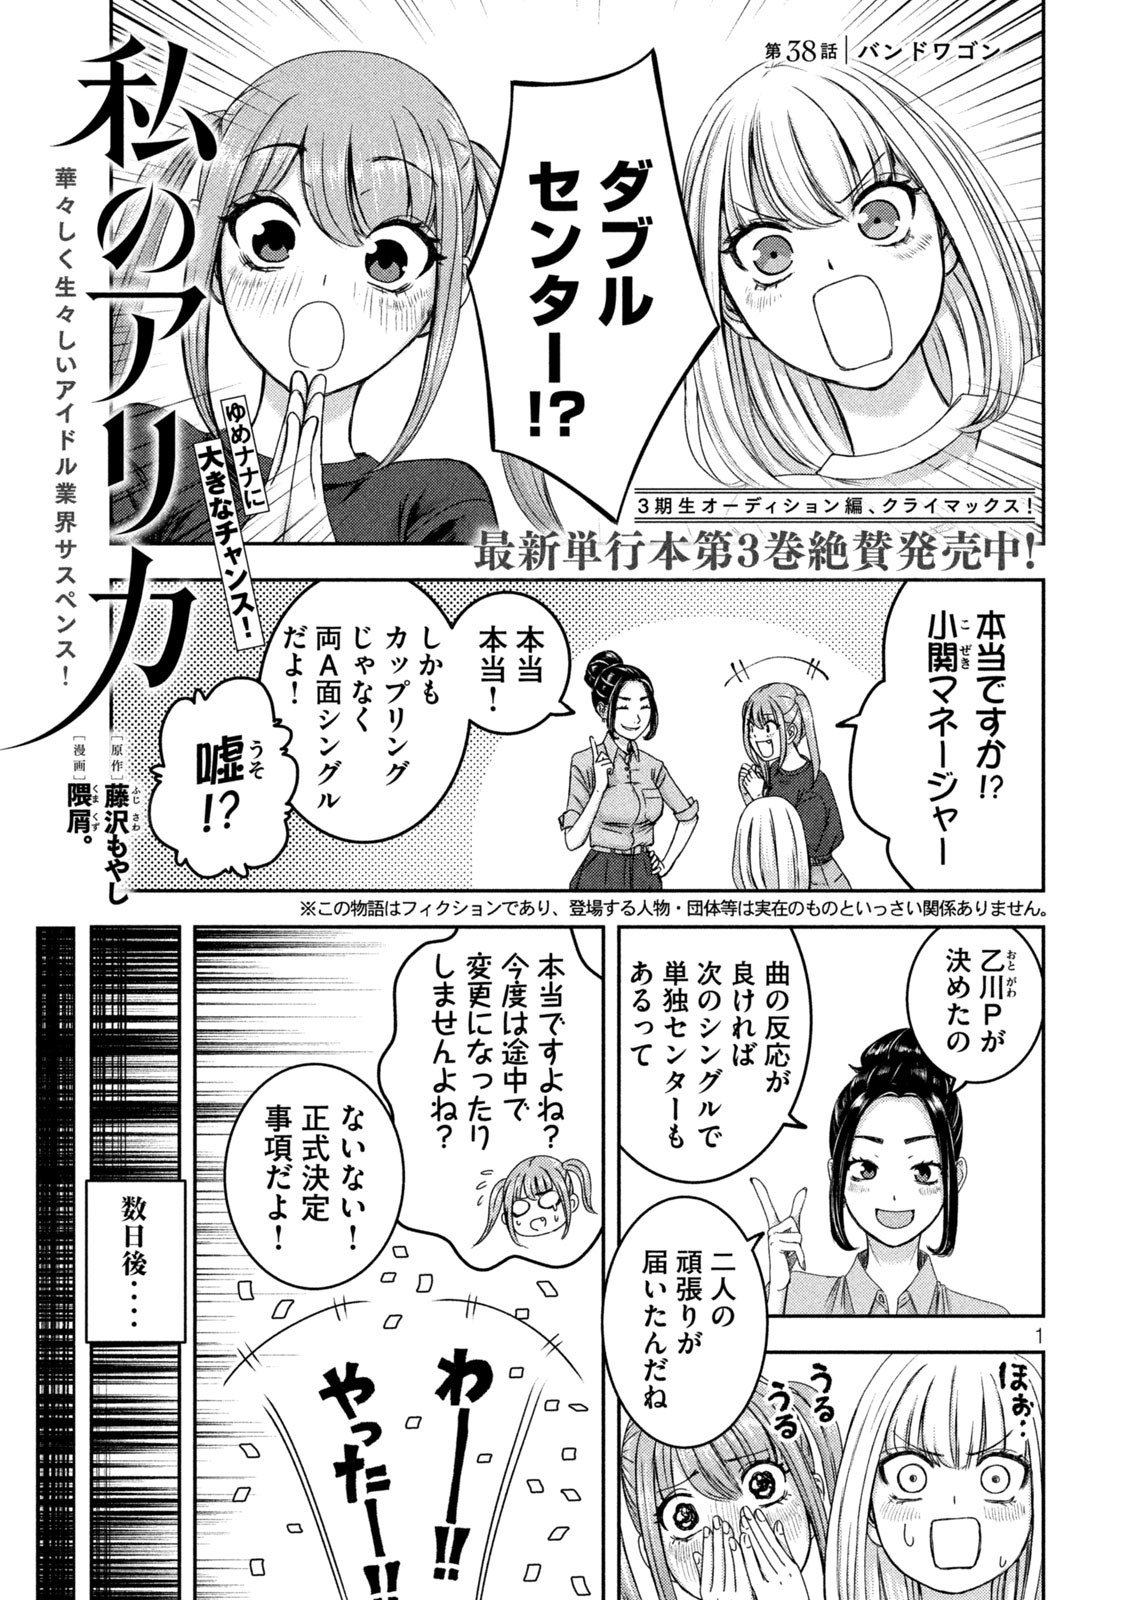 Watashi no Arika - Chapter 38 - Page 1